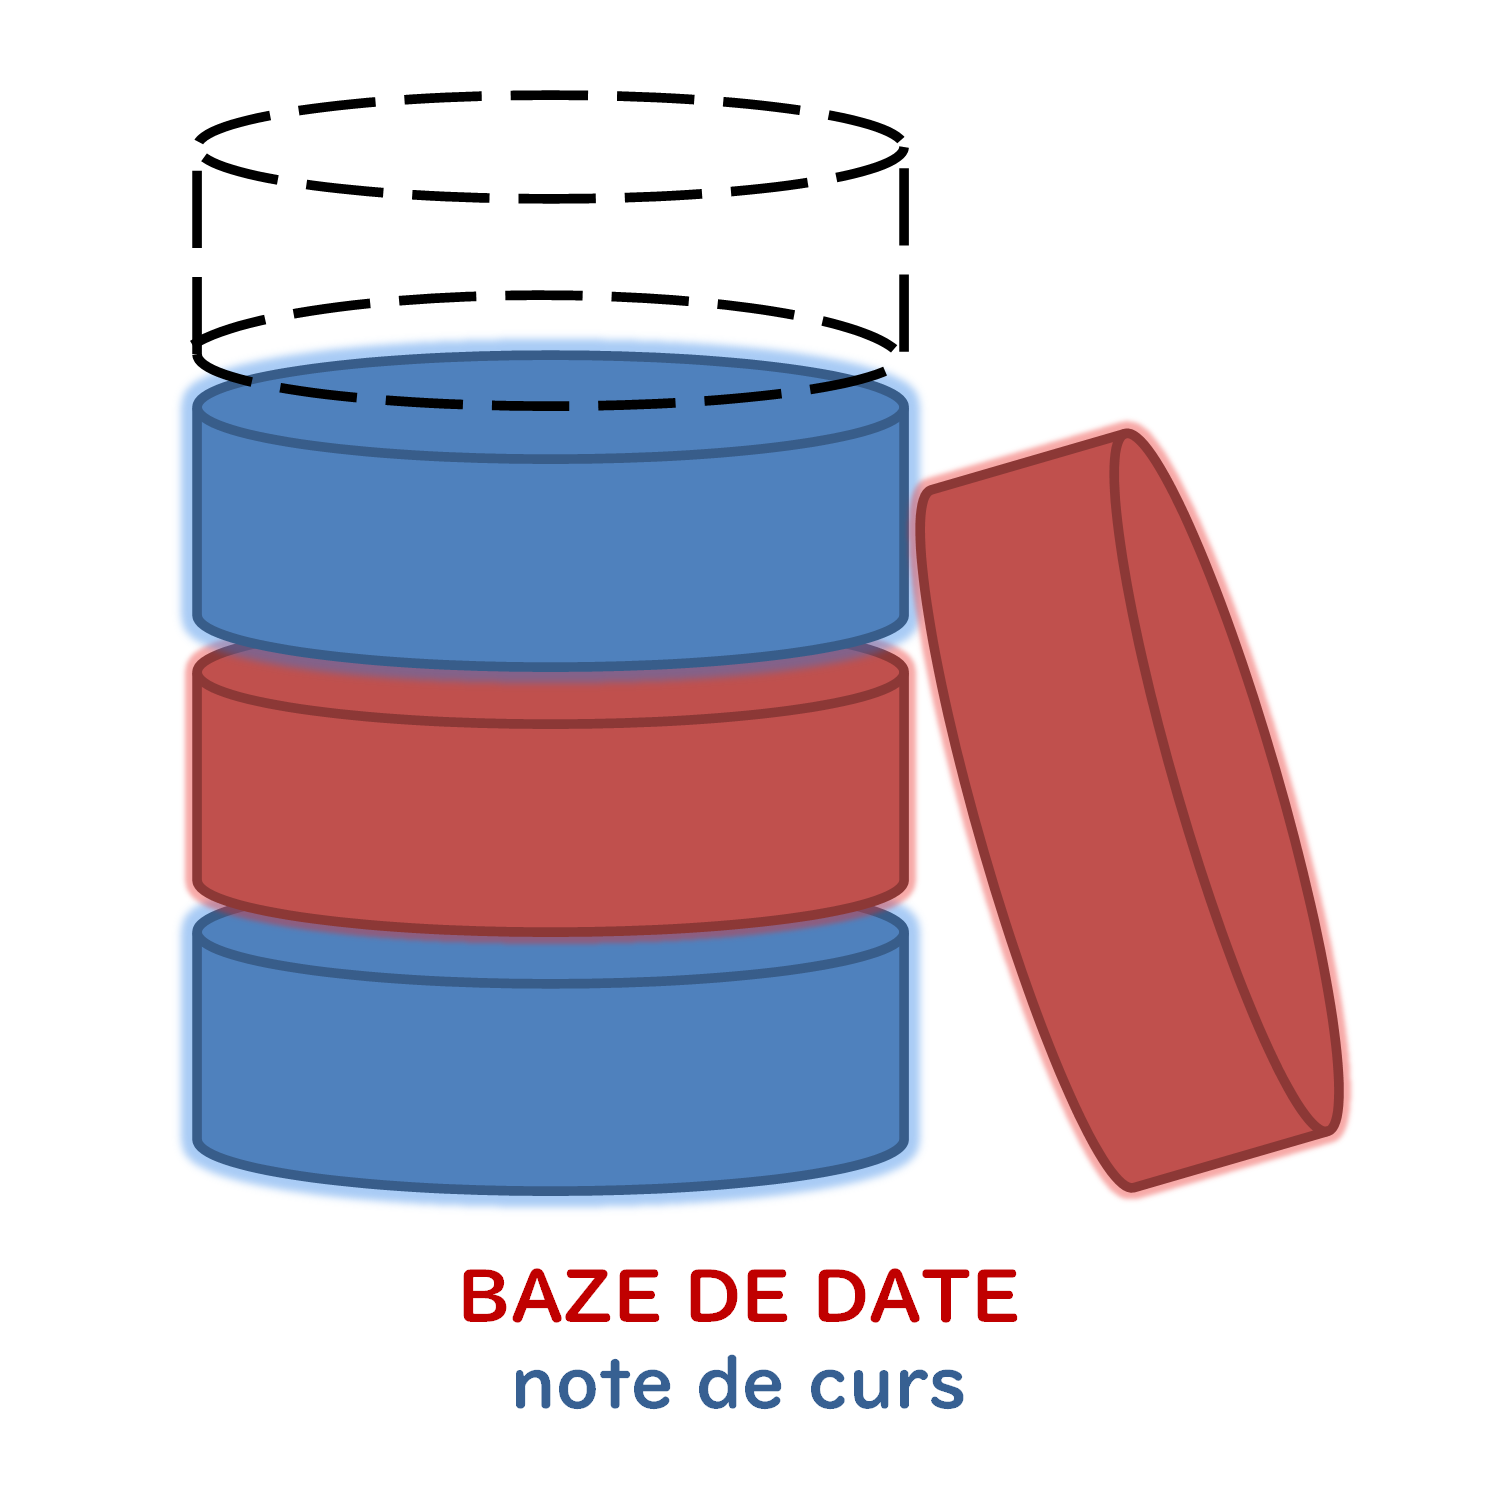 BAZE DE DATE